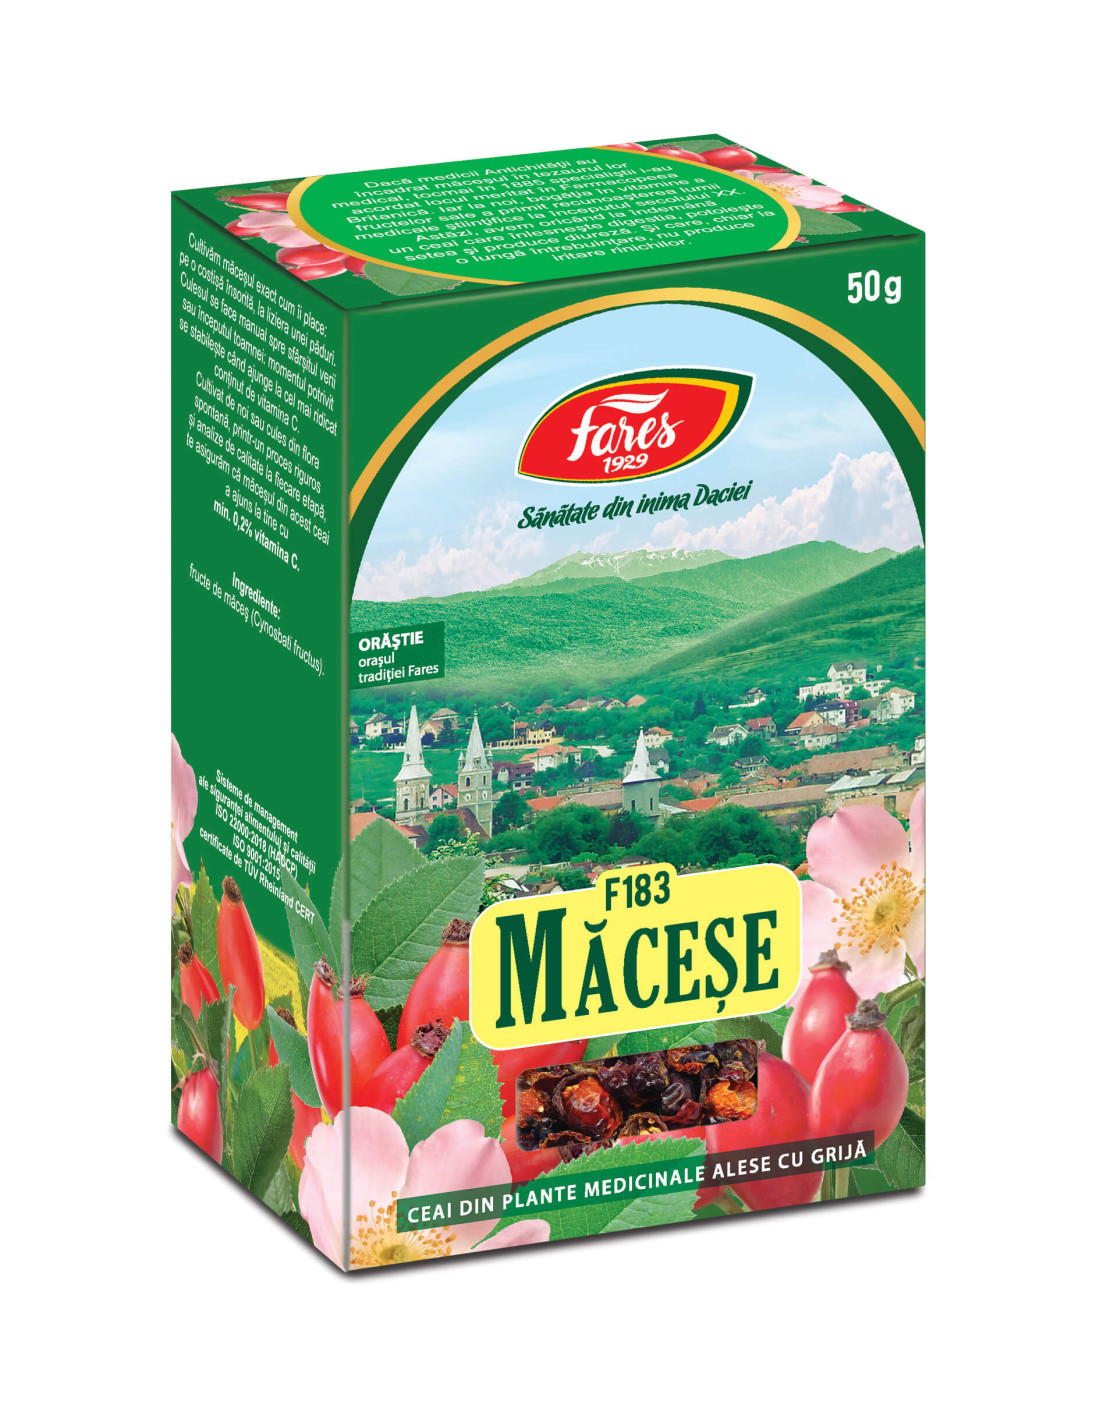 Ceaiuri - Ceai Macese, 50gr, Fares, farmacieieftina.ro